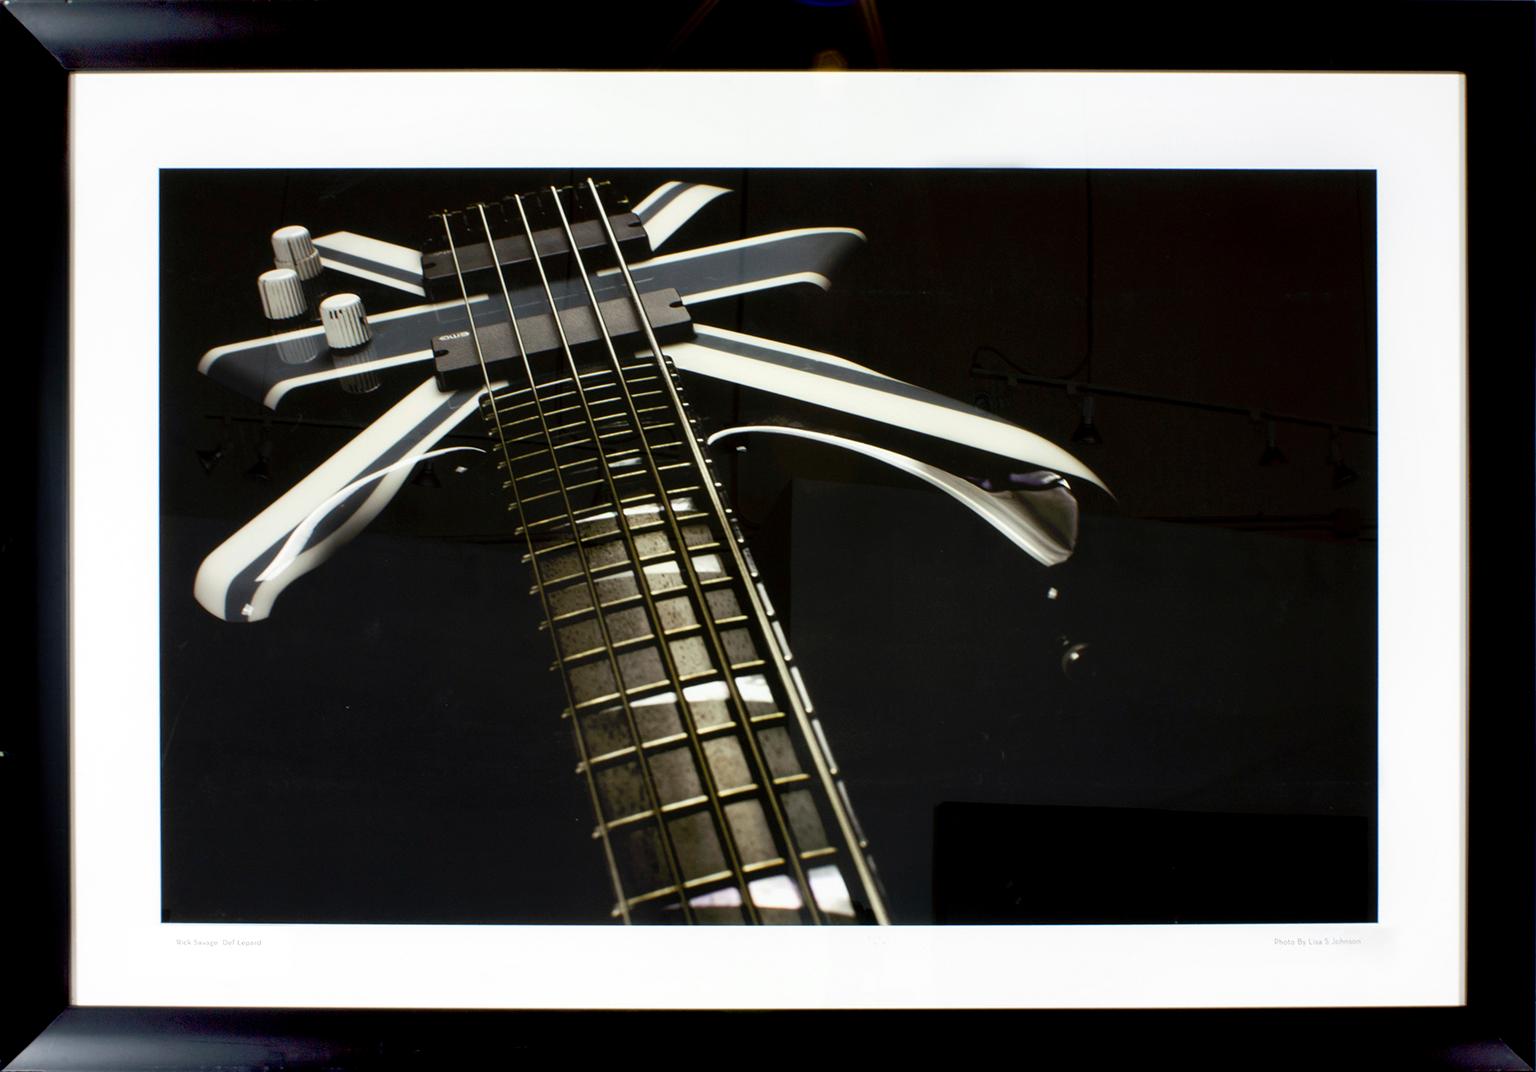 Originalfoto einer Def Leppard-Gitarre von Rick Savage, aufgenommen von Lisa S. Johnson für ihr Buch "108 Rock Star Guitars". "Rick Savage Def Lepard" auf dem linken unteren Rand der Vorderseite. "Foto von Lisa S. Johnson" am unteren rechten